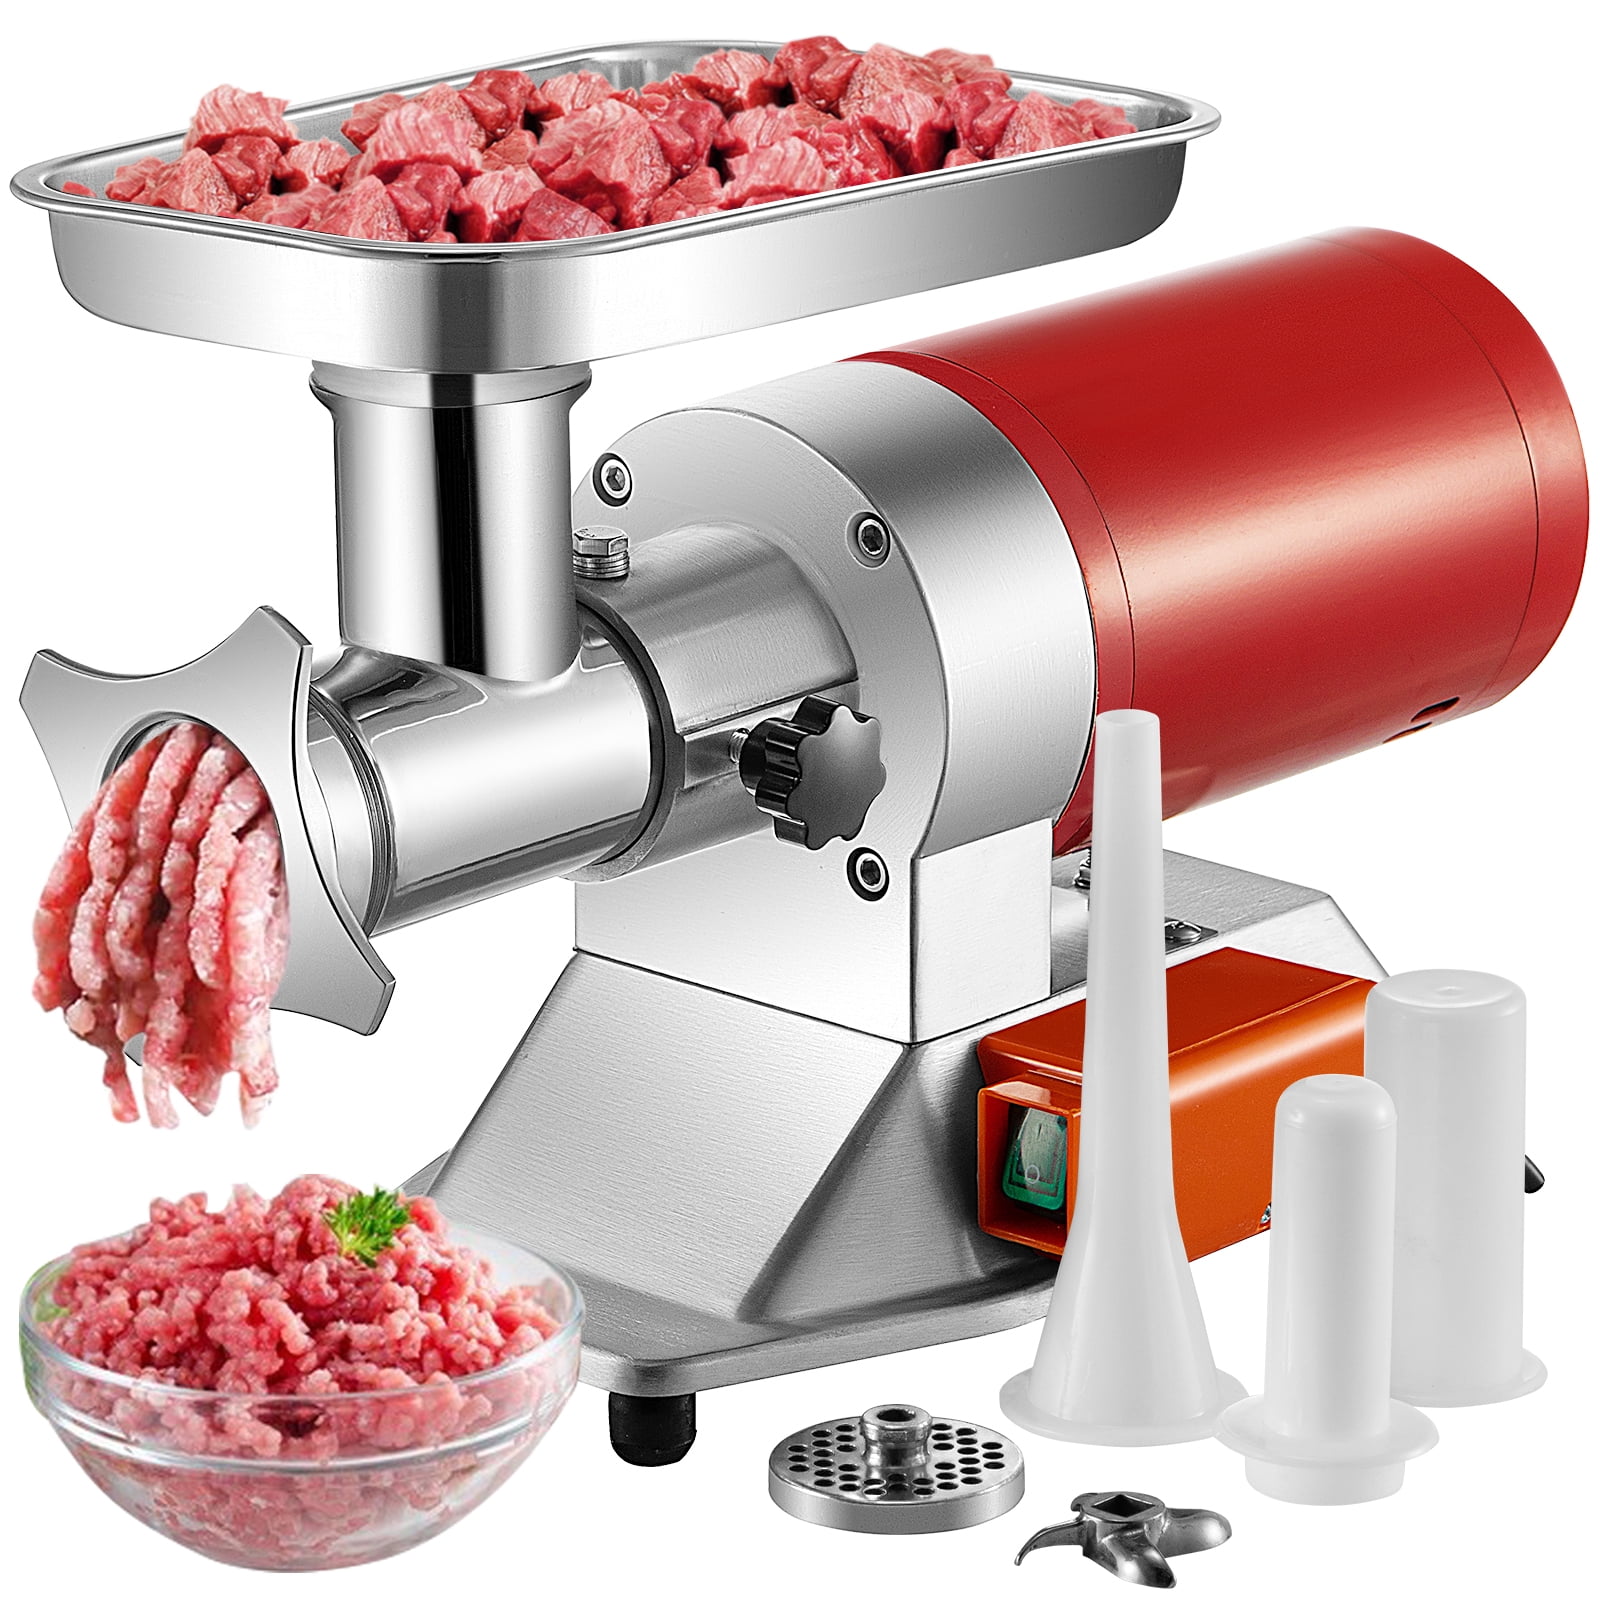 Details about   VEVOR Commercial Meat Mincer Grinder Manual Kitchen Sausage Maker Heavy Duty 